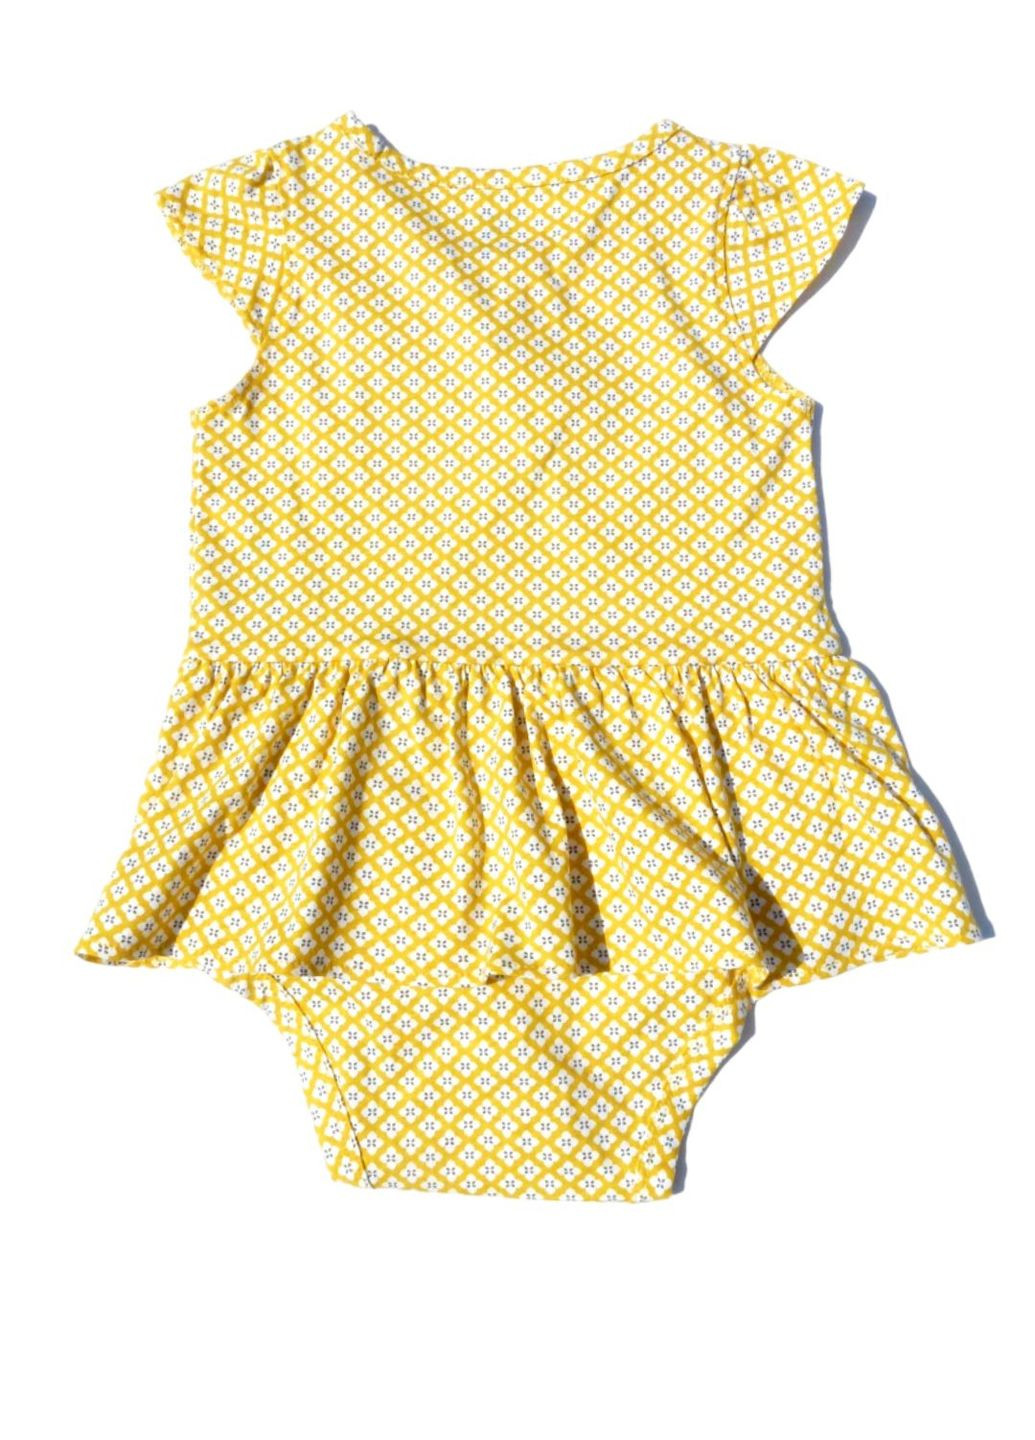 Жовтий комплект (боді+лосіни) саrtеr's для дівчинки, літній, жовто-синій, 92 см Carter's